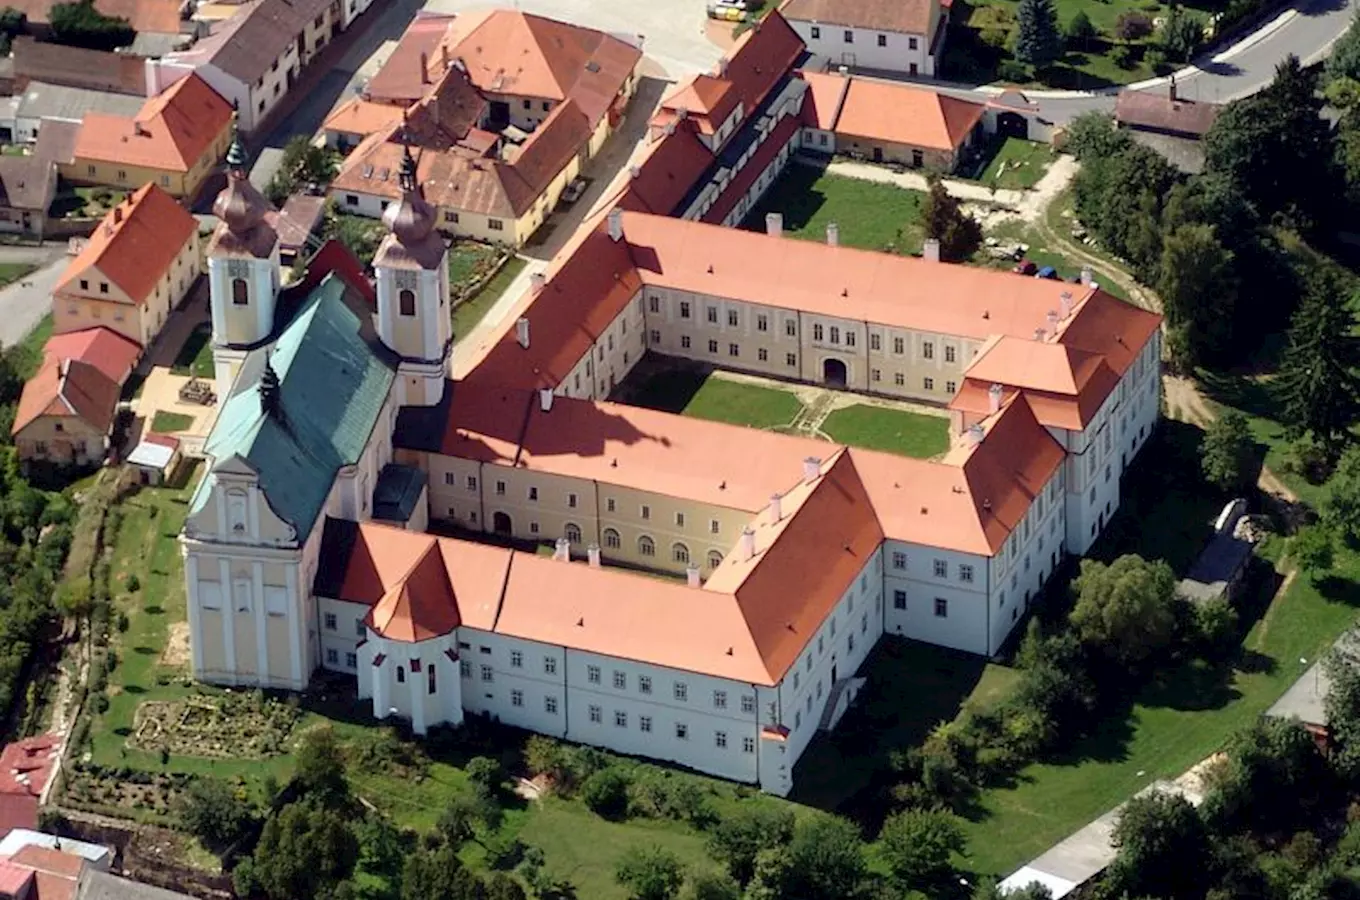 Klášter Nová Říše – premonstrátský klášter na Vysočině